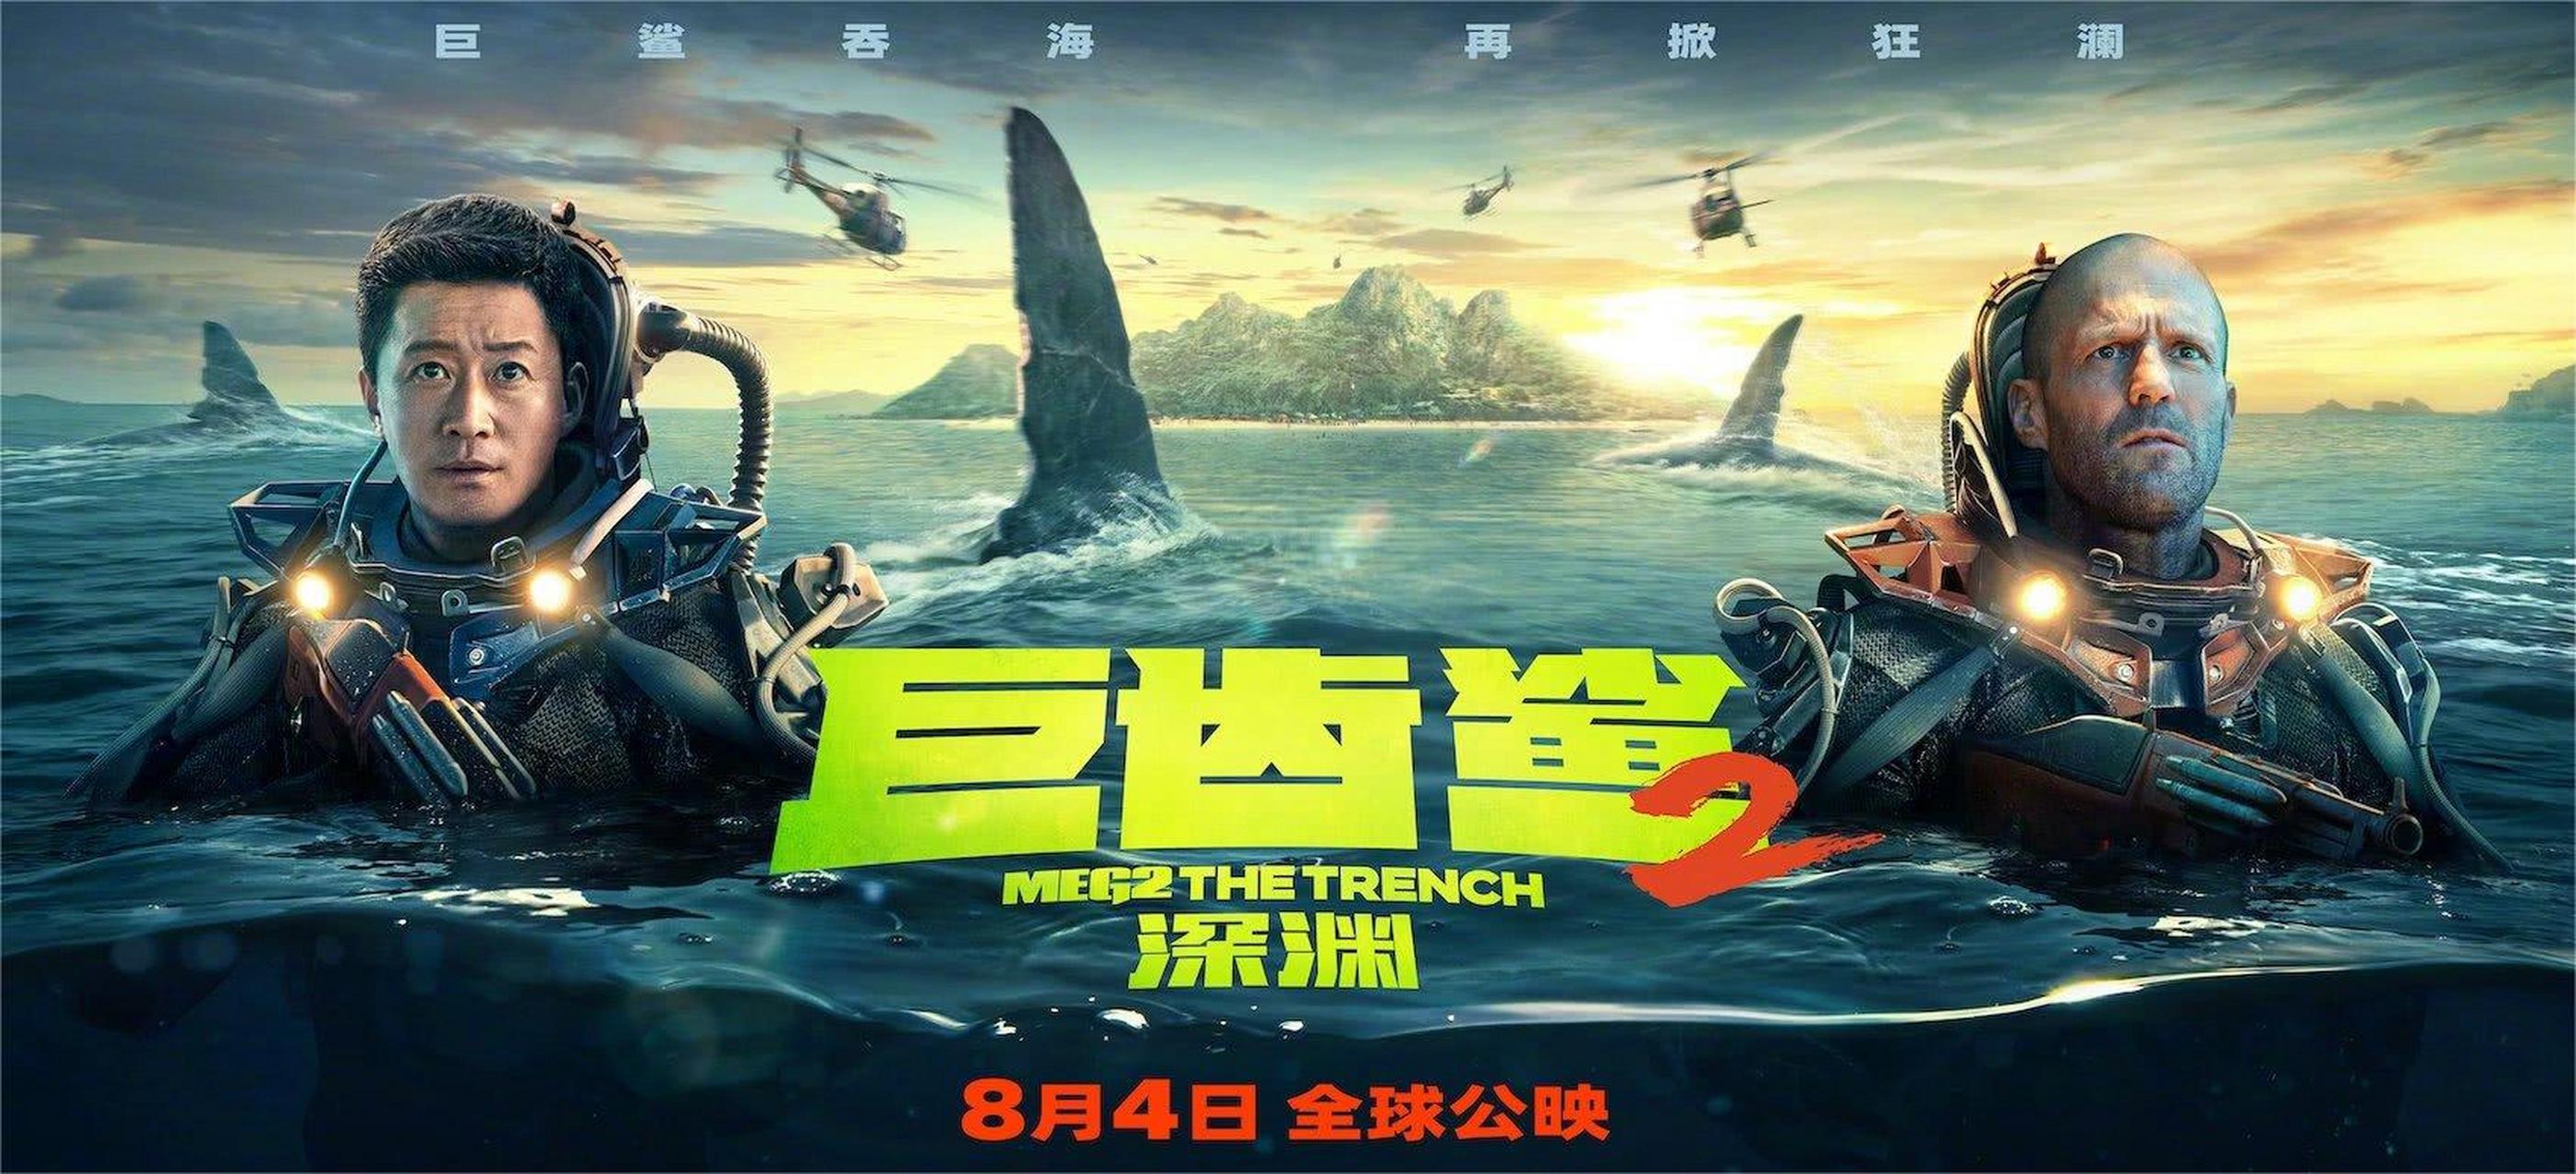 《巨齿鲨2》】 据新华网报道,作为一部中国主控,全球上映的深海怪兽